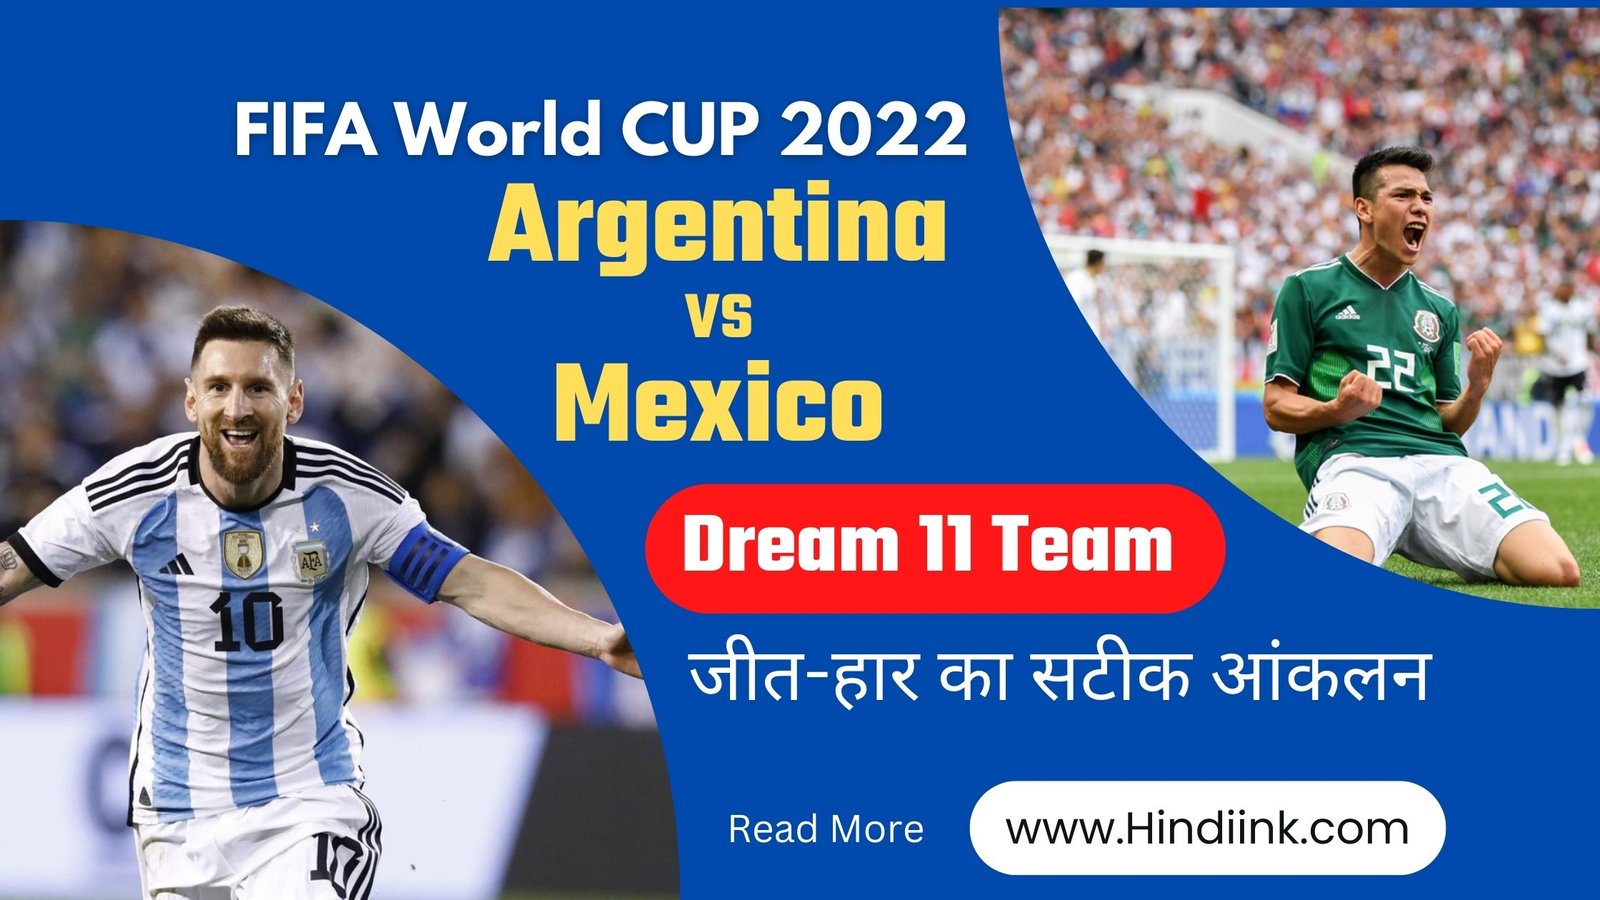 Argentina vs Mexico Match Prediction in Hindi, dream 11 team argentina mexico match